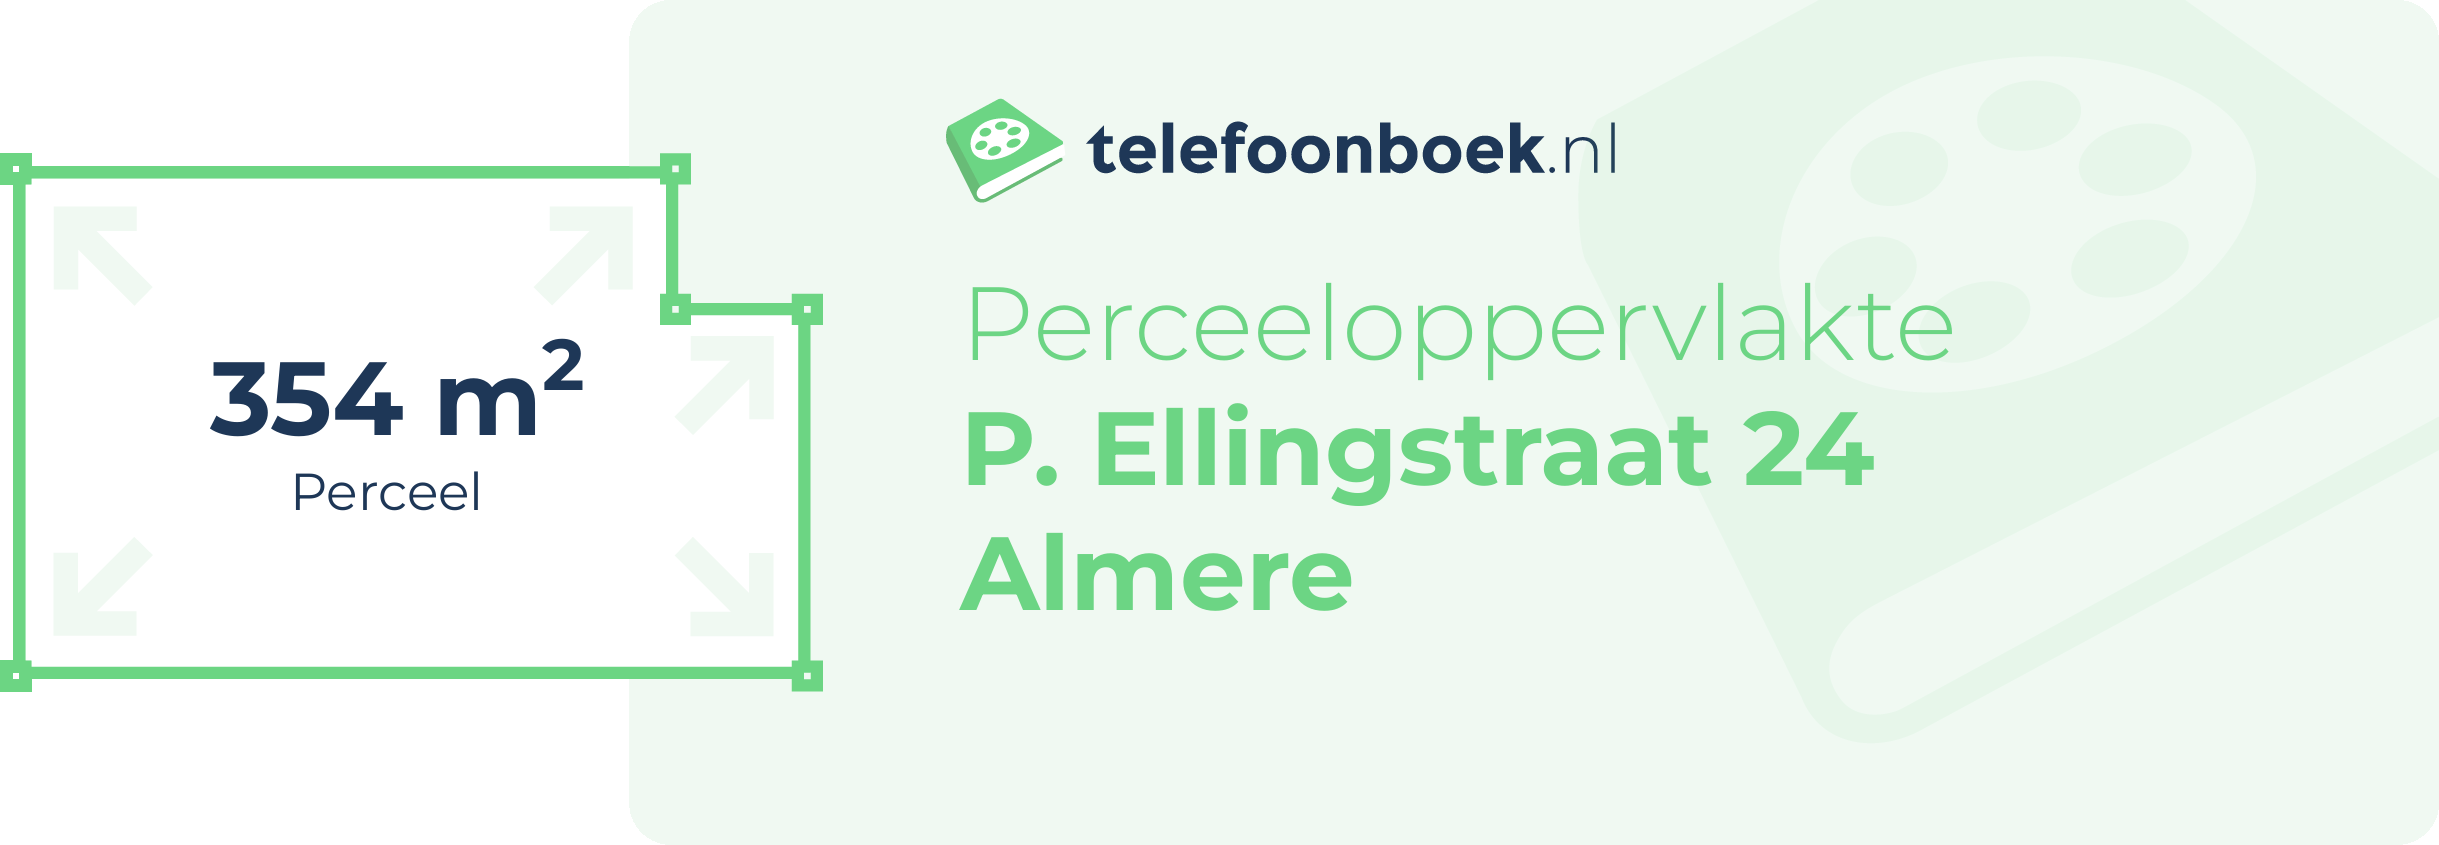 Perceeloppervlakte P. Ellingstraat 24 Almere